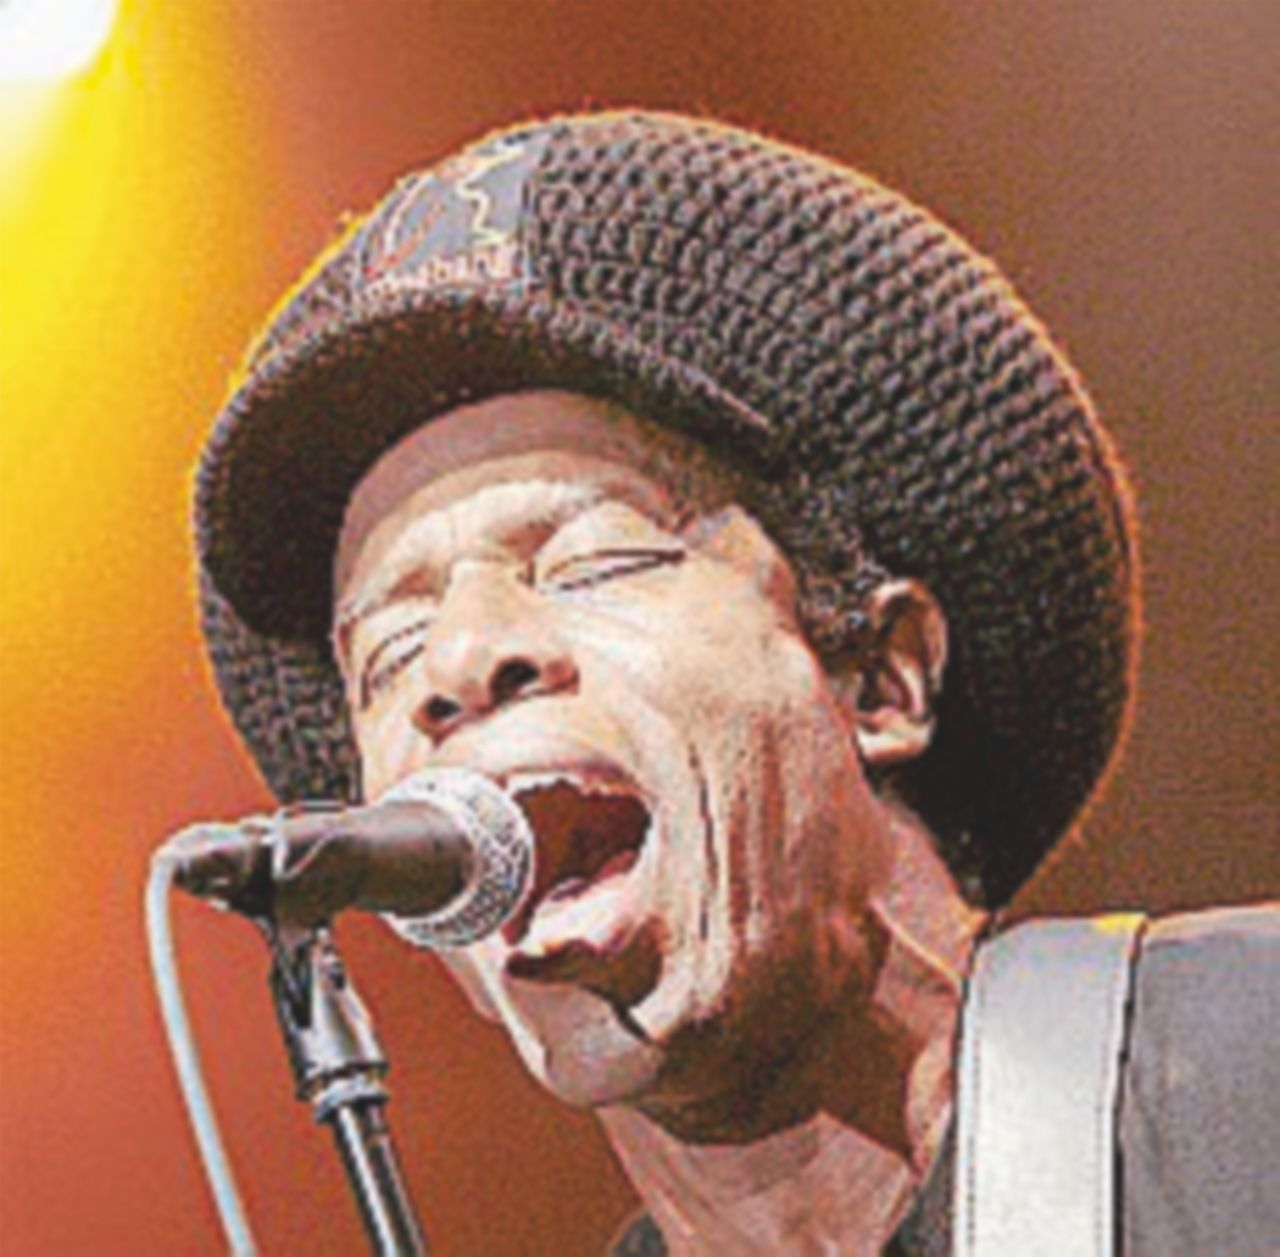 Copertina di “Gimme hope Jo’anna”, nel 1988 si balla il reggae anti-apartheid